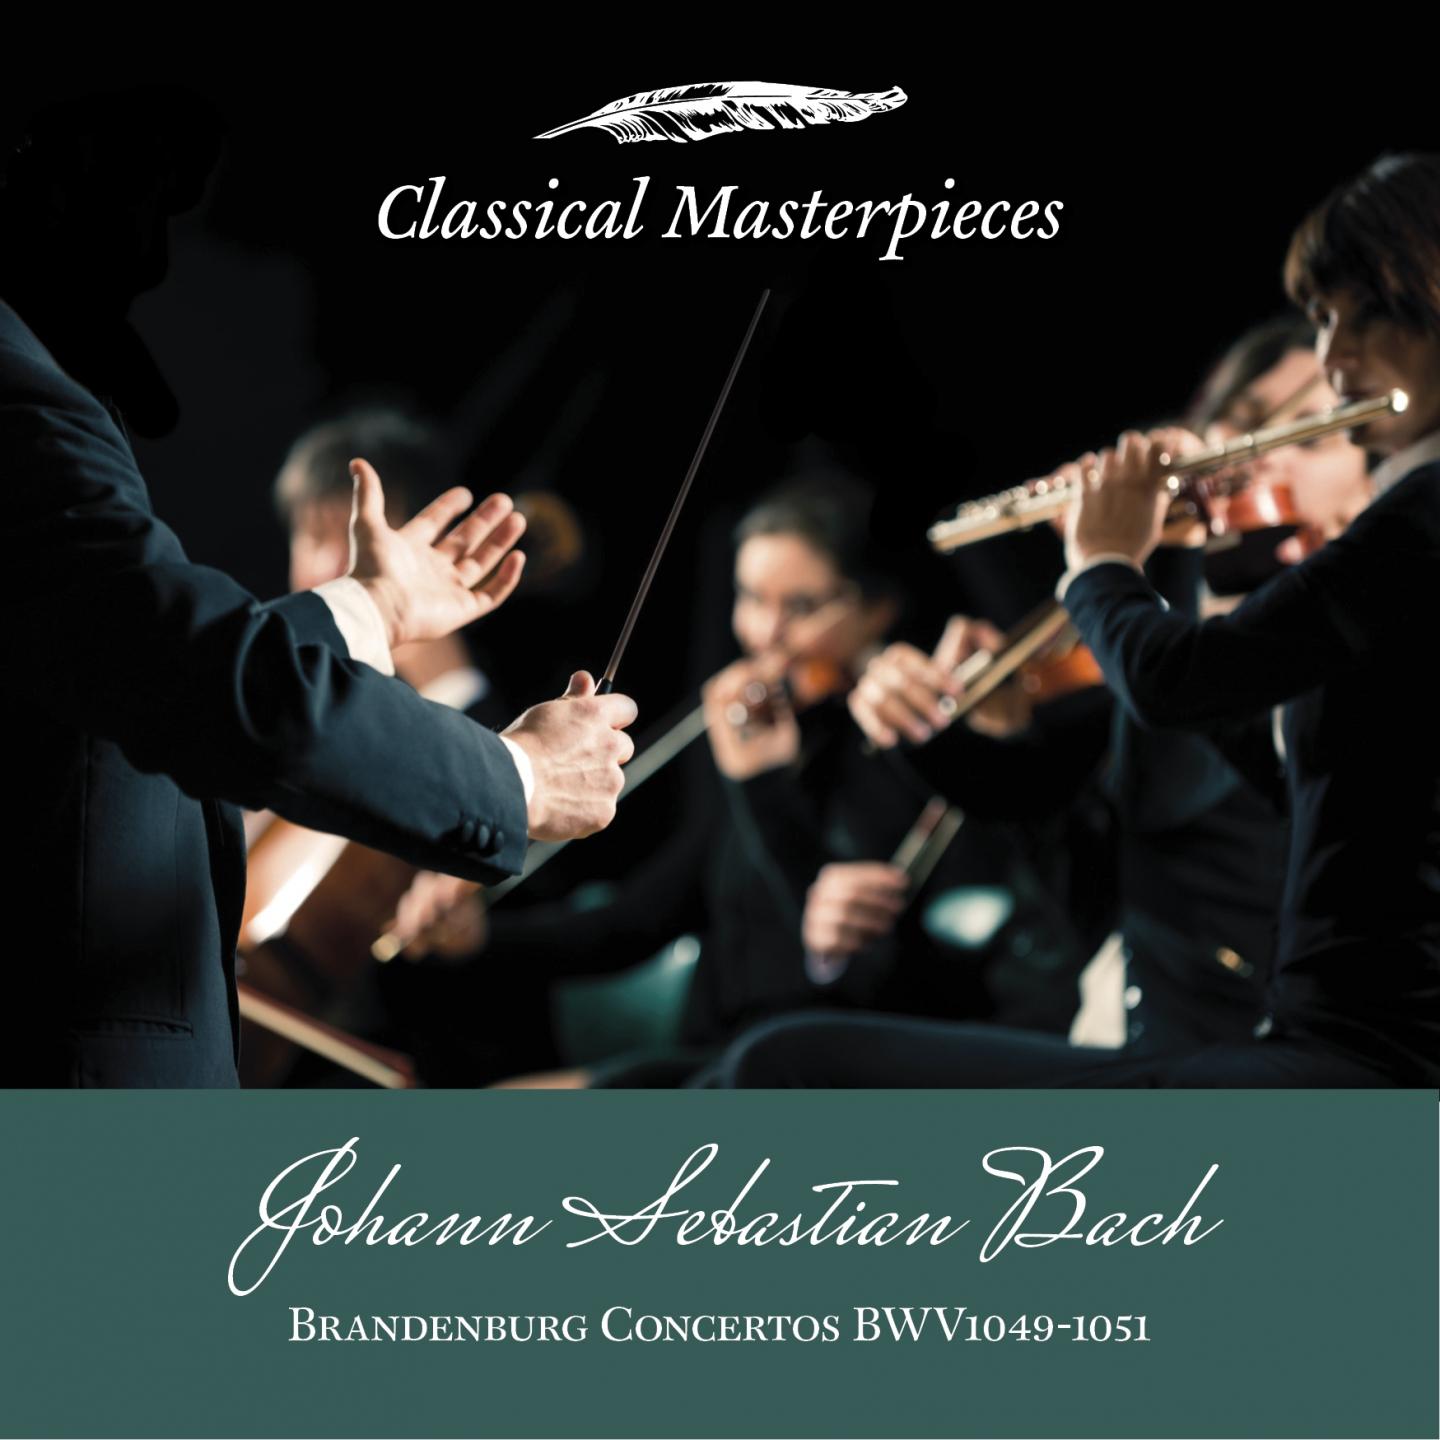 Brandenburg Concerto VI in B Flat Major, BW1051: Allegro